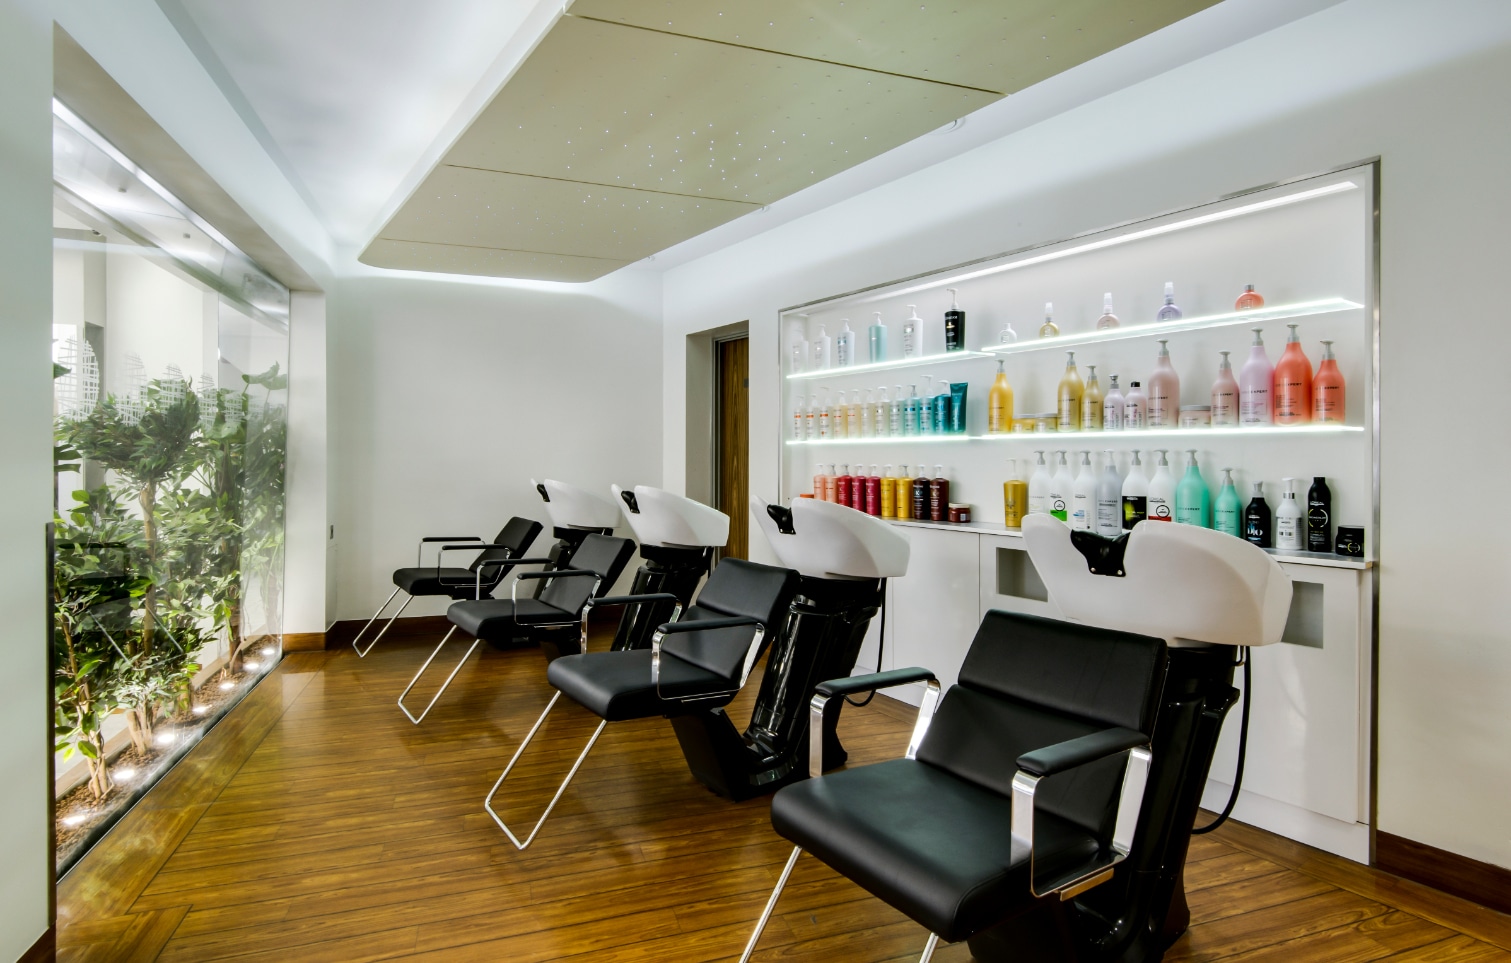 Vanilla Room Hair & Beauty Salon Design